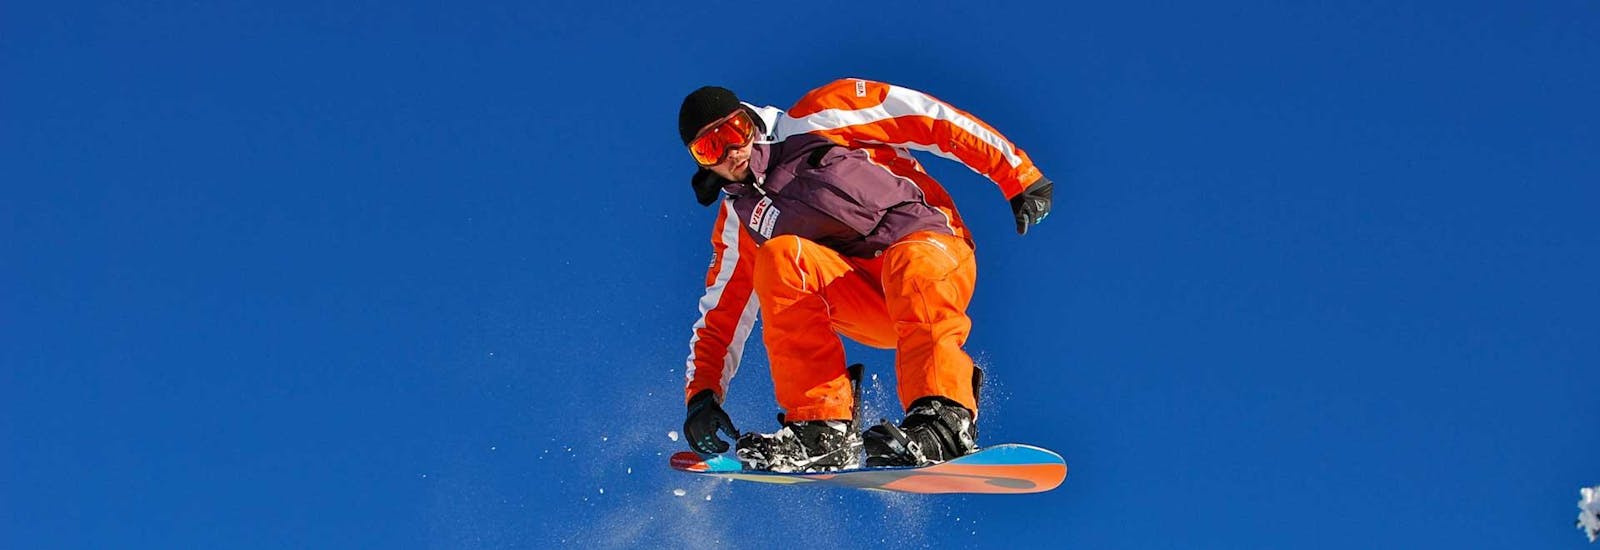 Snowboardkurs "Intensiv" für Kinder & Erwachsene in Großarl mit Skischule Toni Gruber.